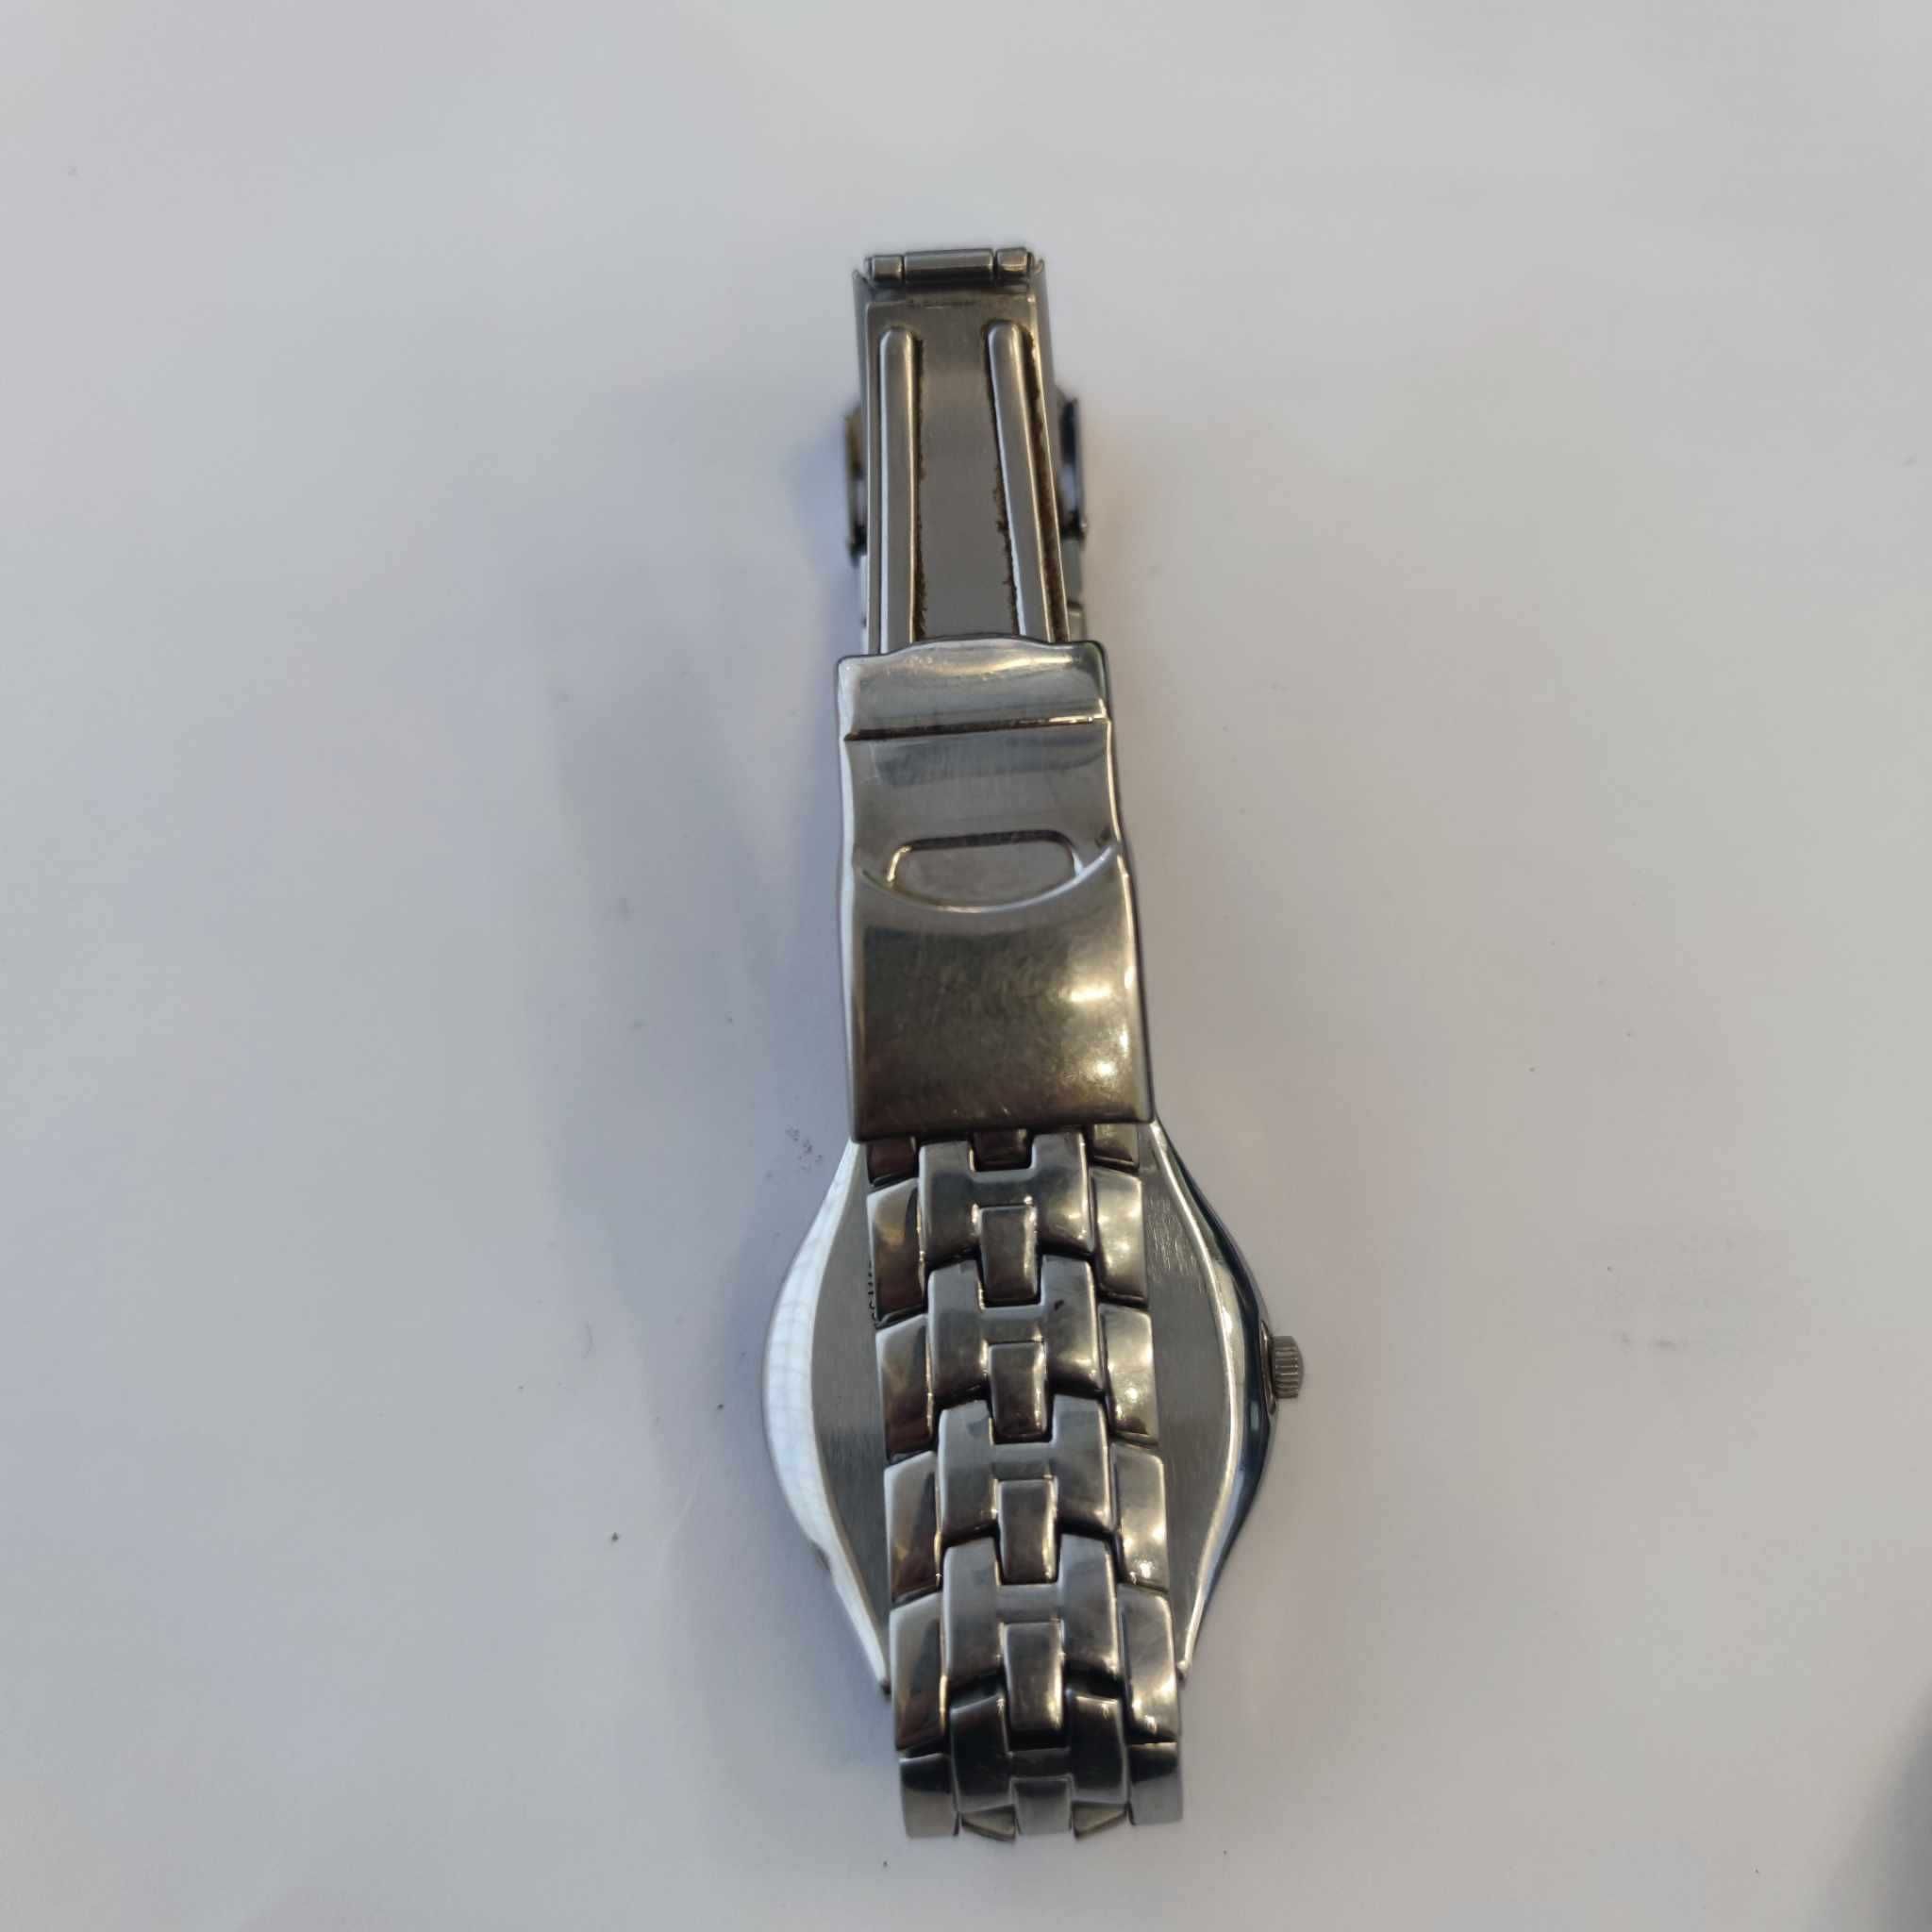 Швейцарски часовник Swatch Irony